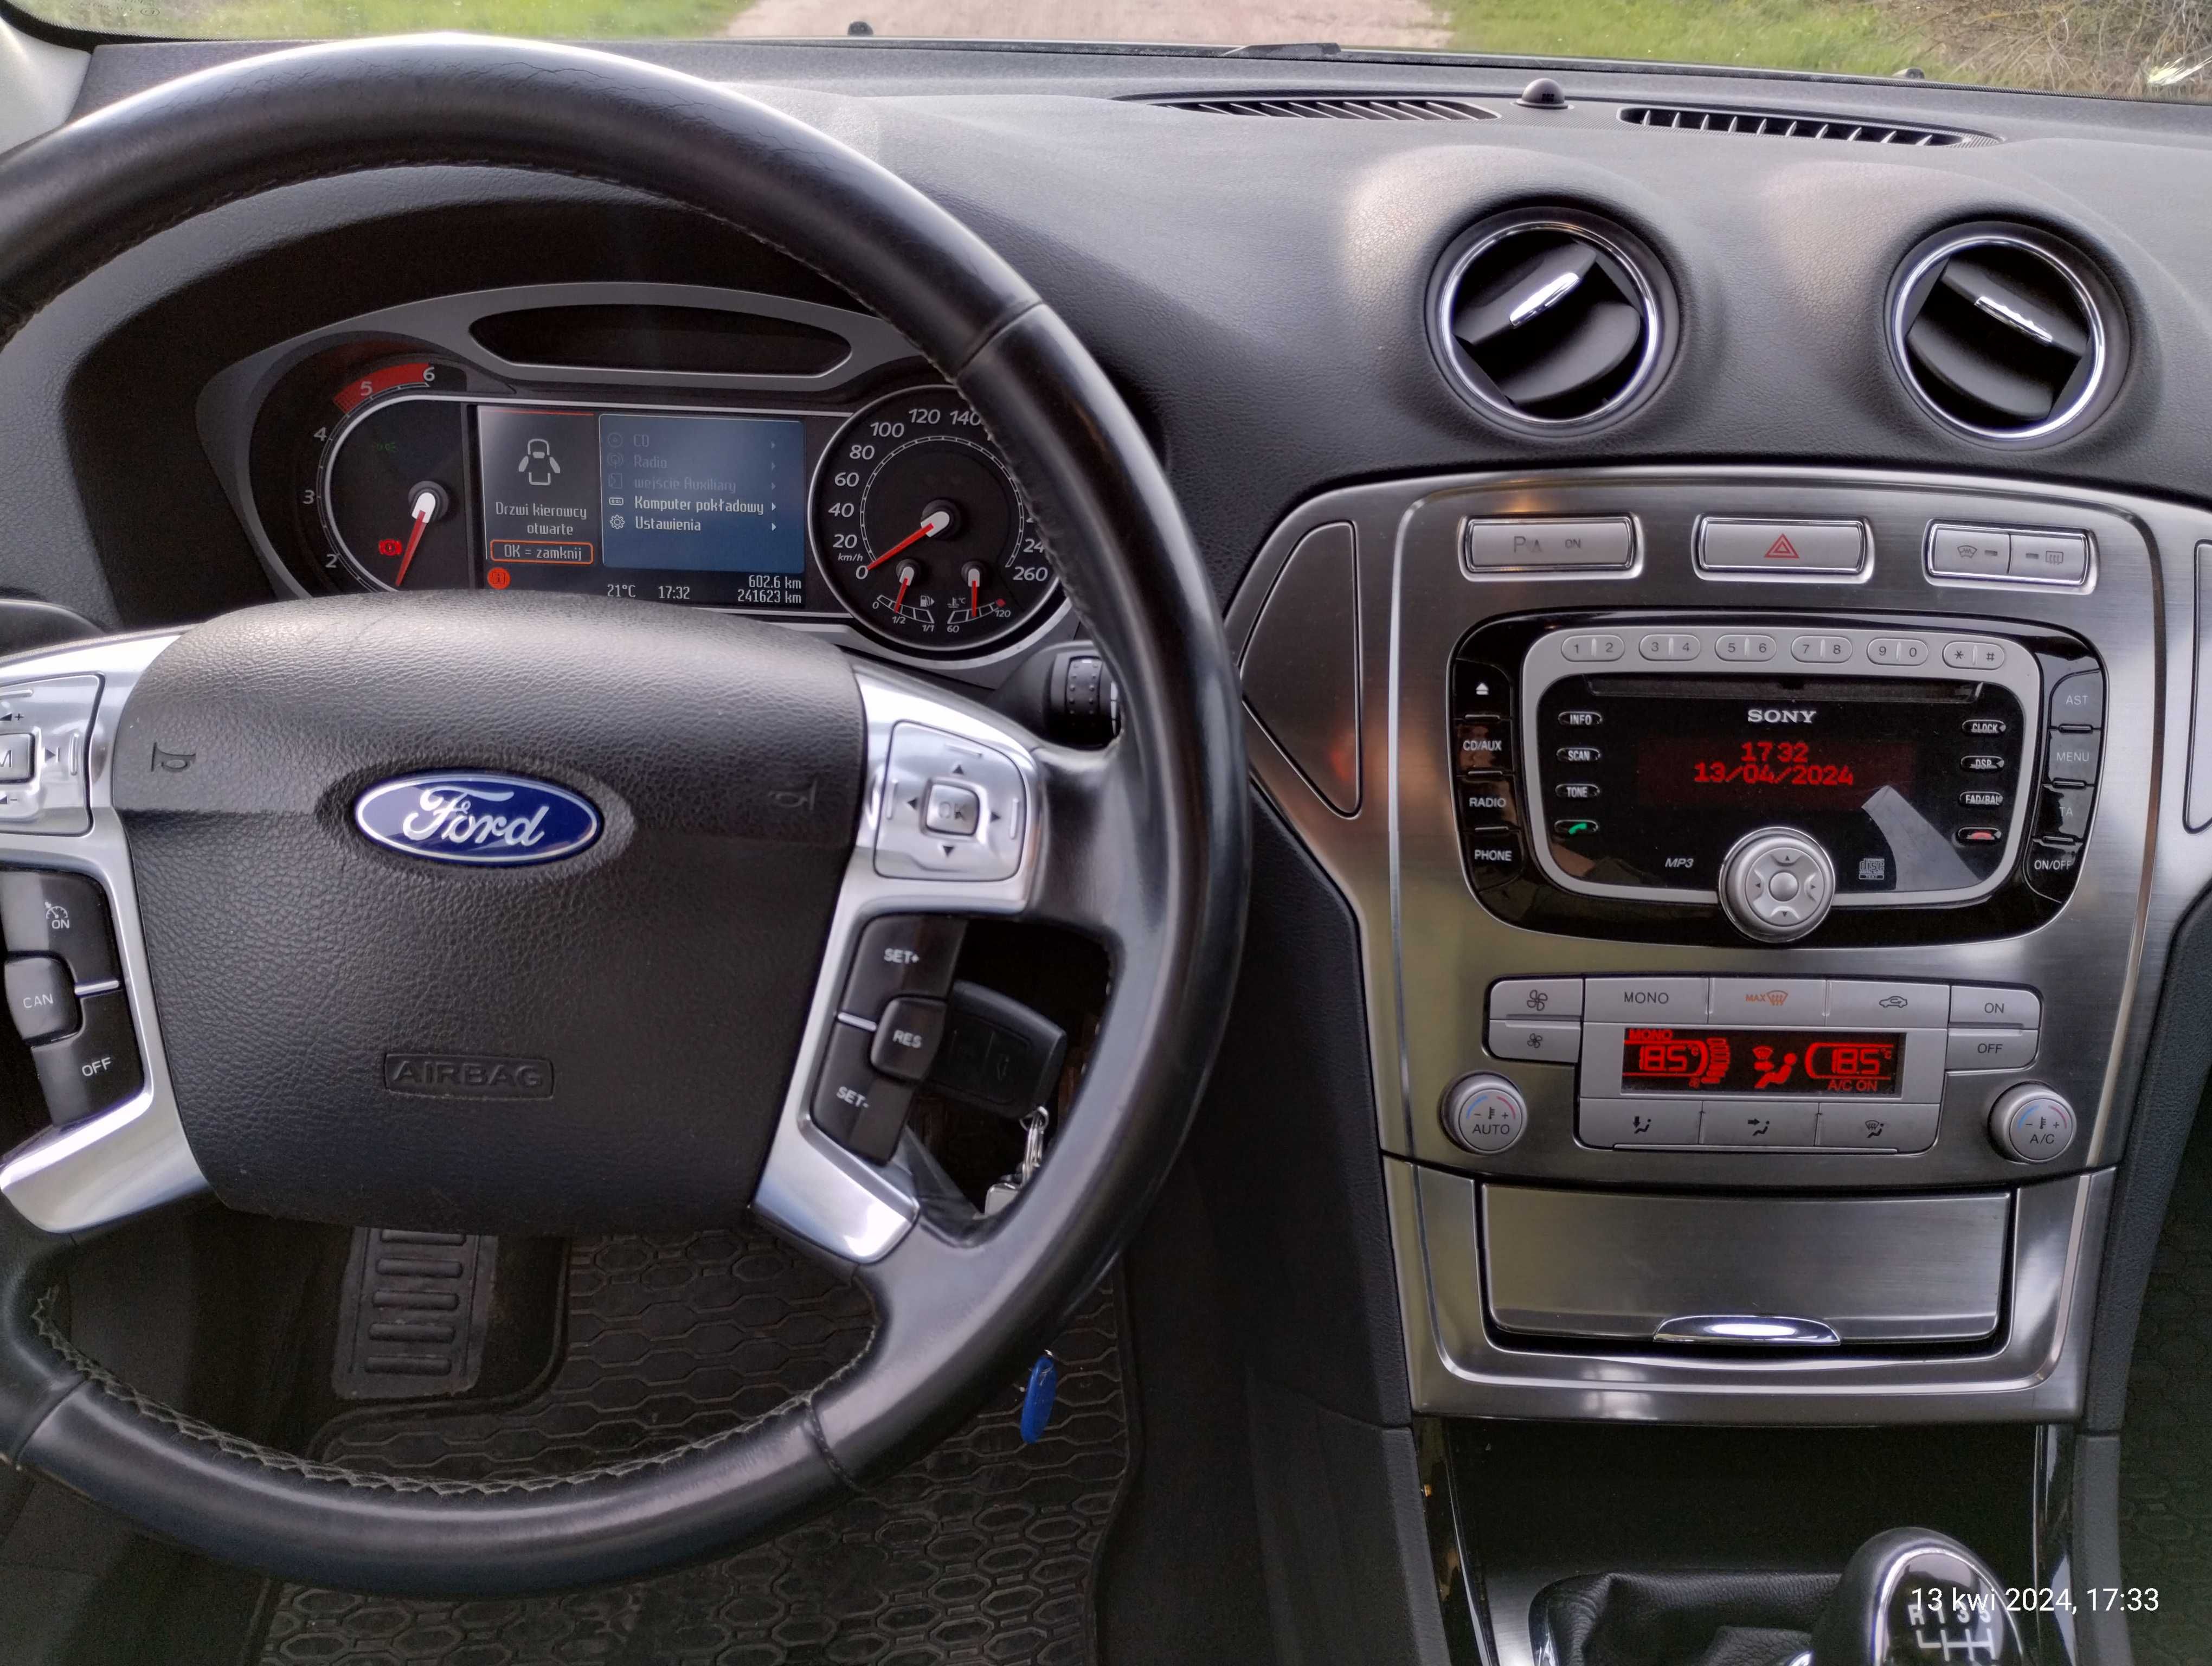 Ford Mondeo 2.0 TDCI 140KM CONVERS XENON MP3